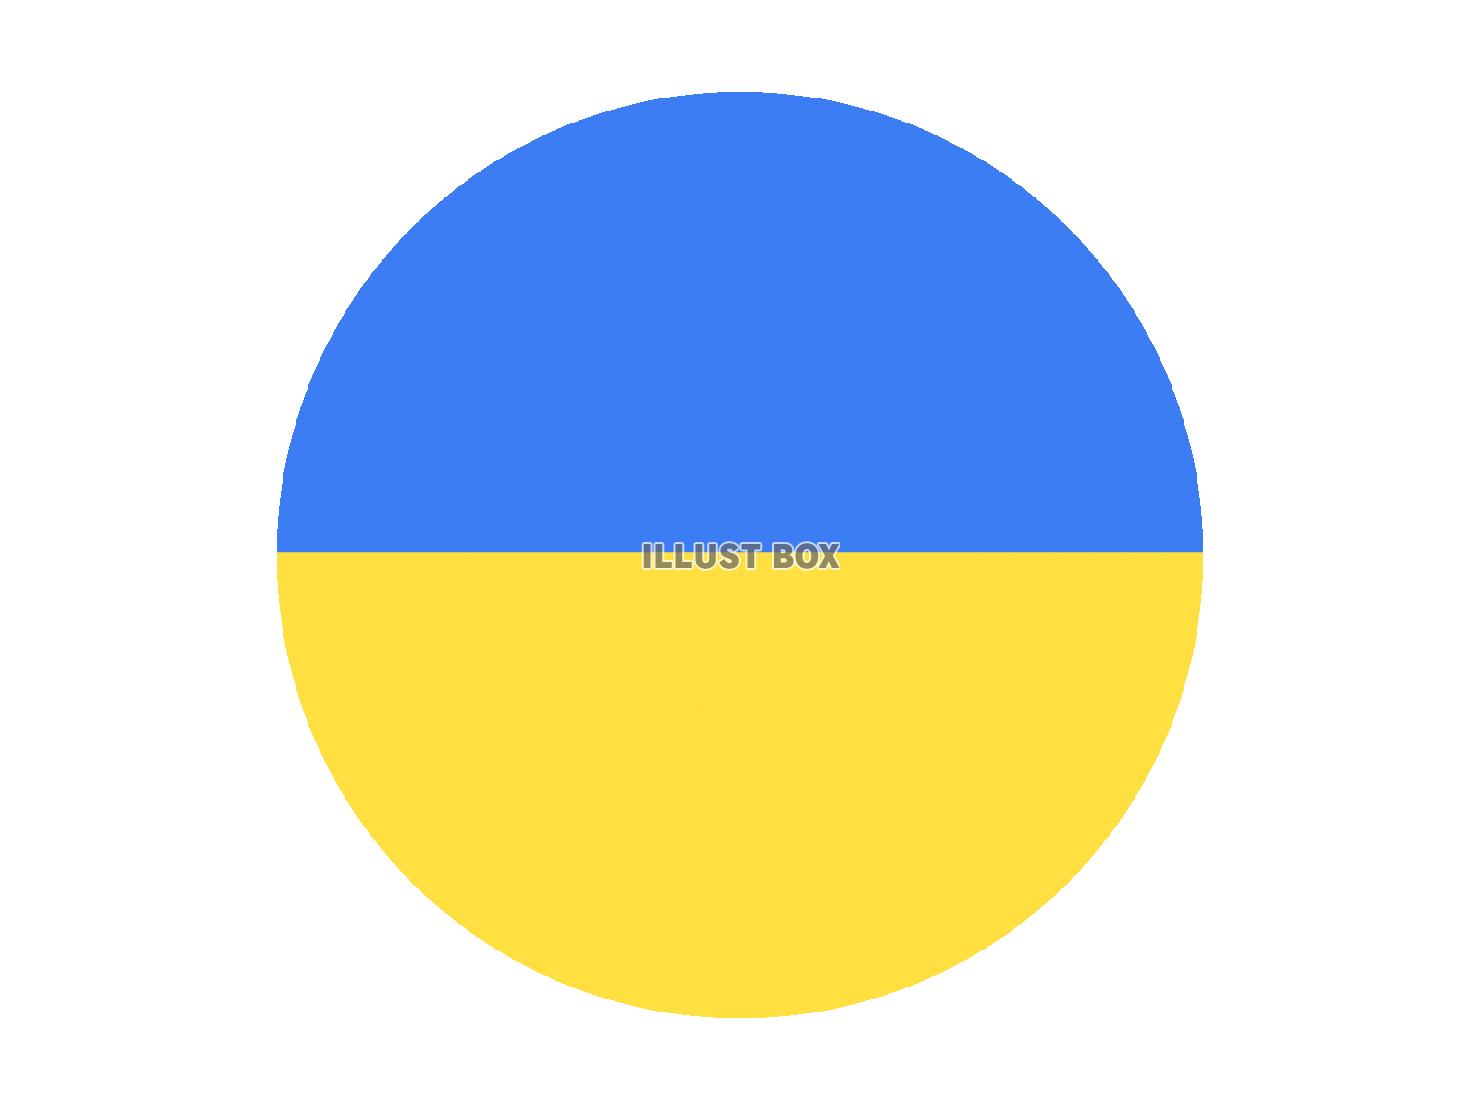 ウクライナの国旗をイメージした丸アイコン